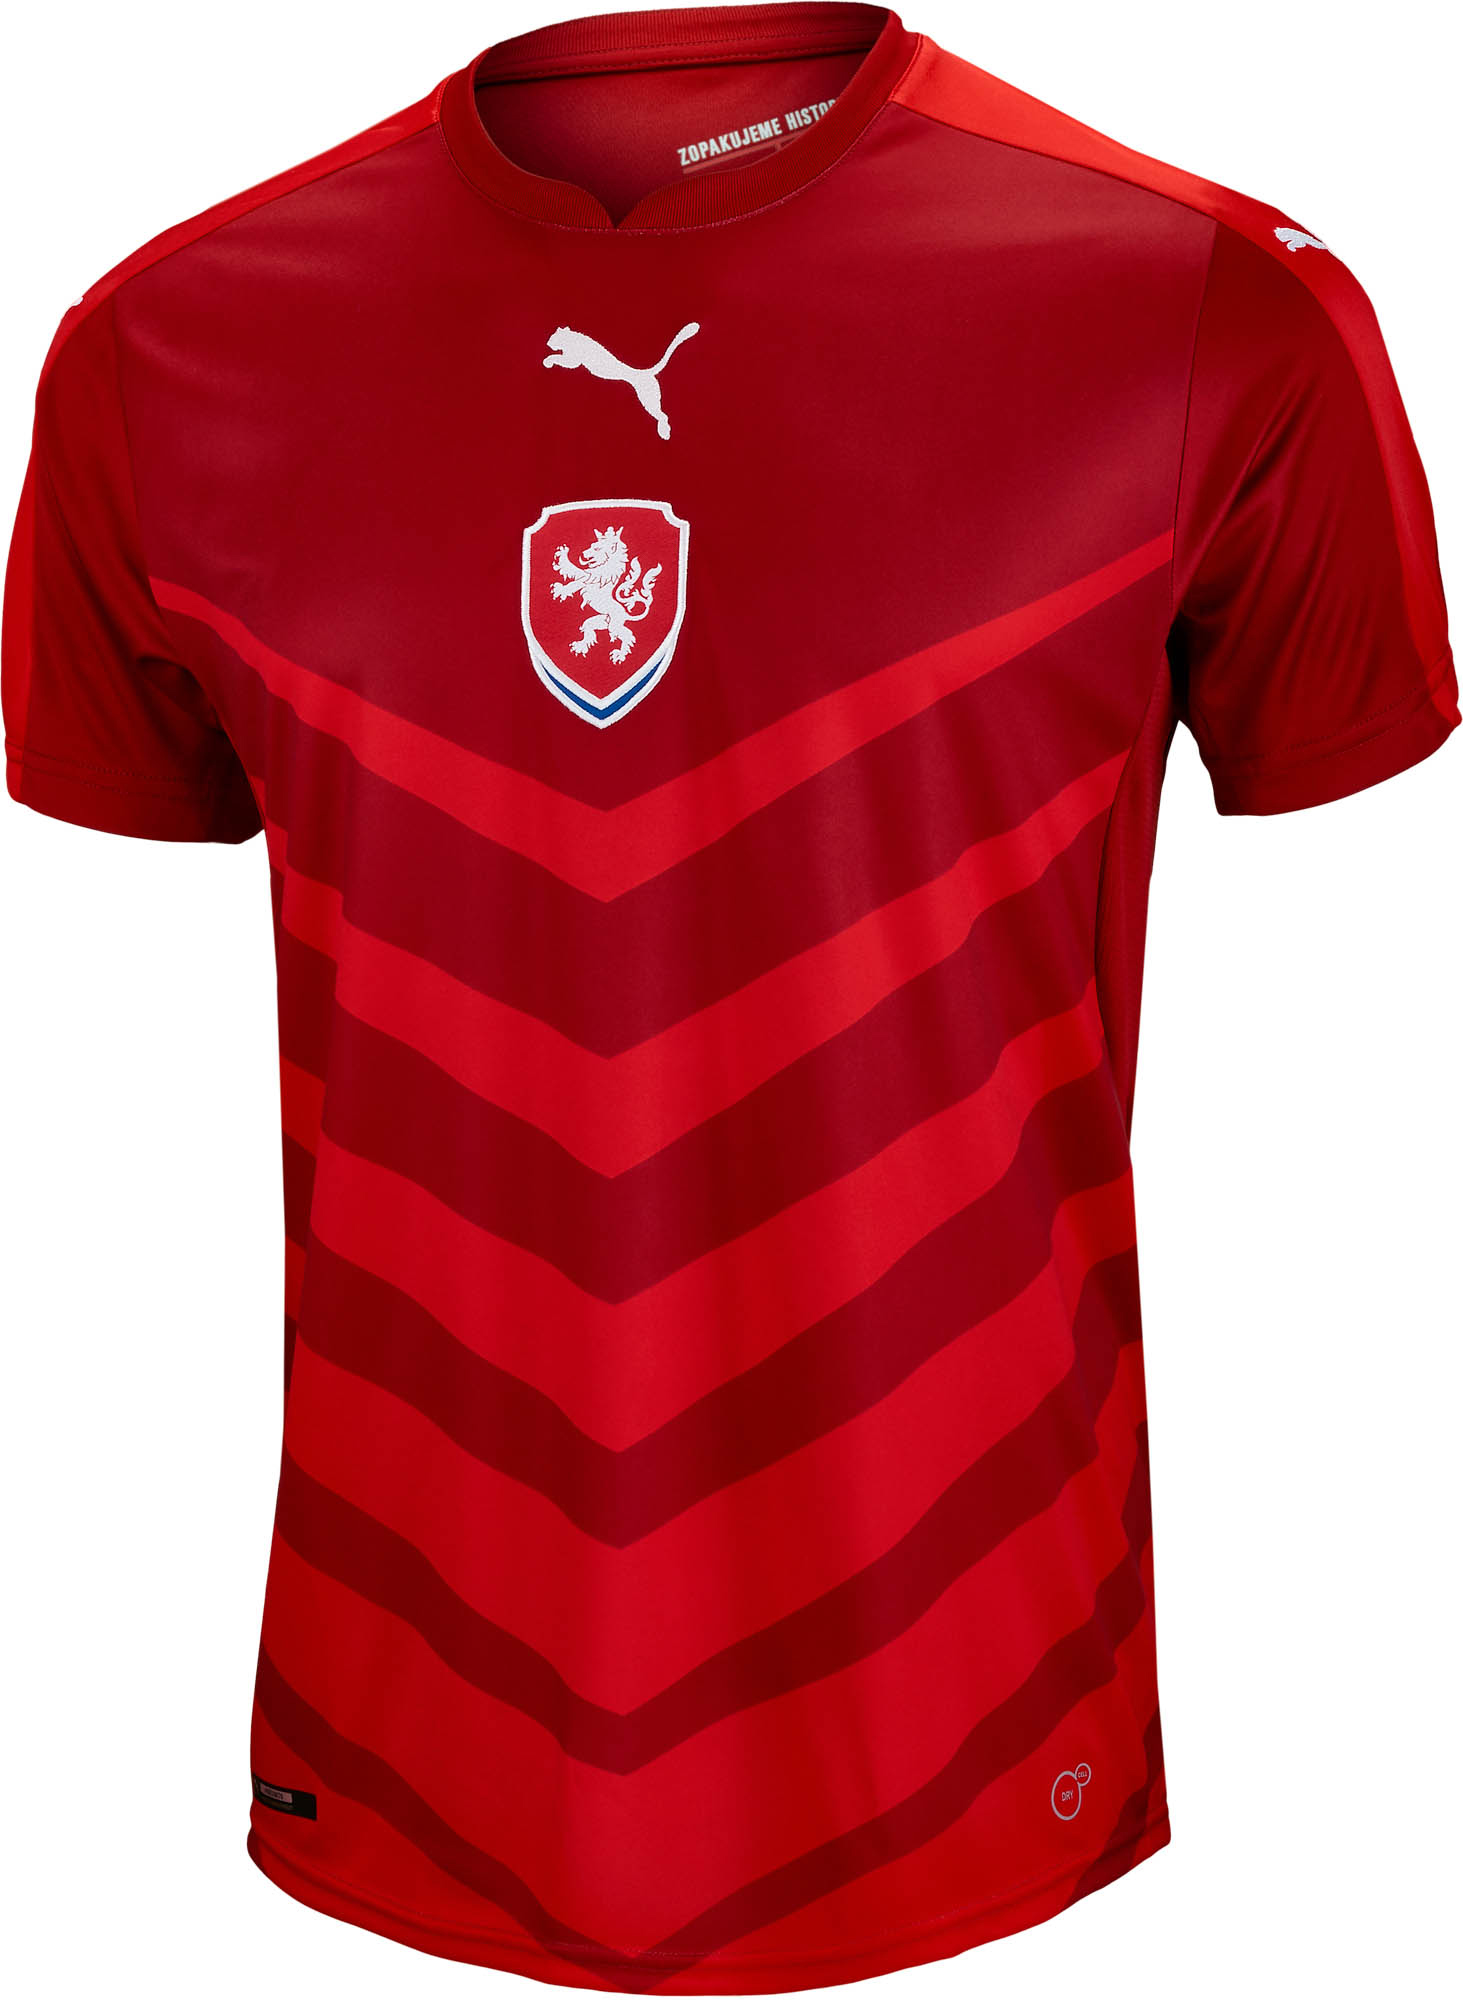 Puma Czech Republic Home Jersey - 2016 Czech Soccer Jerseys